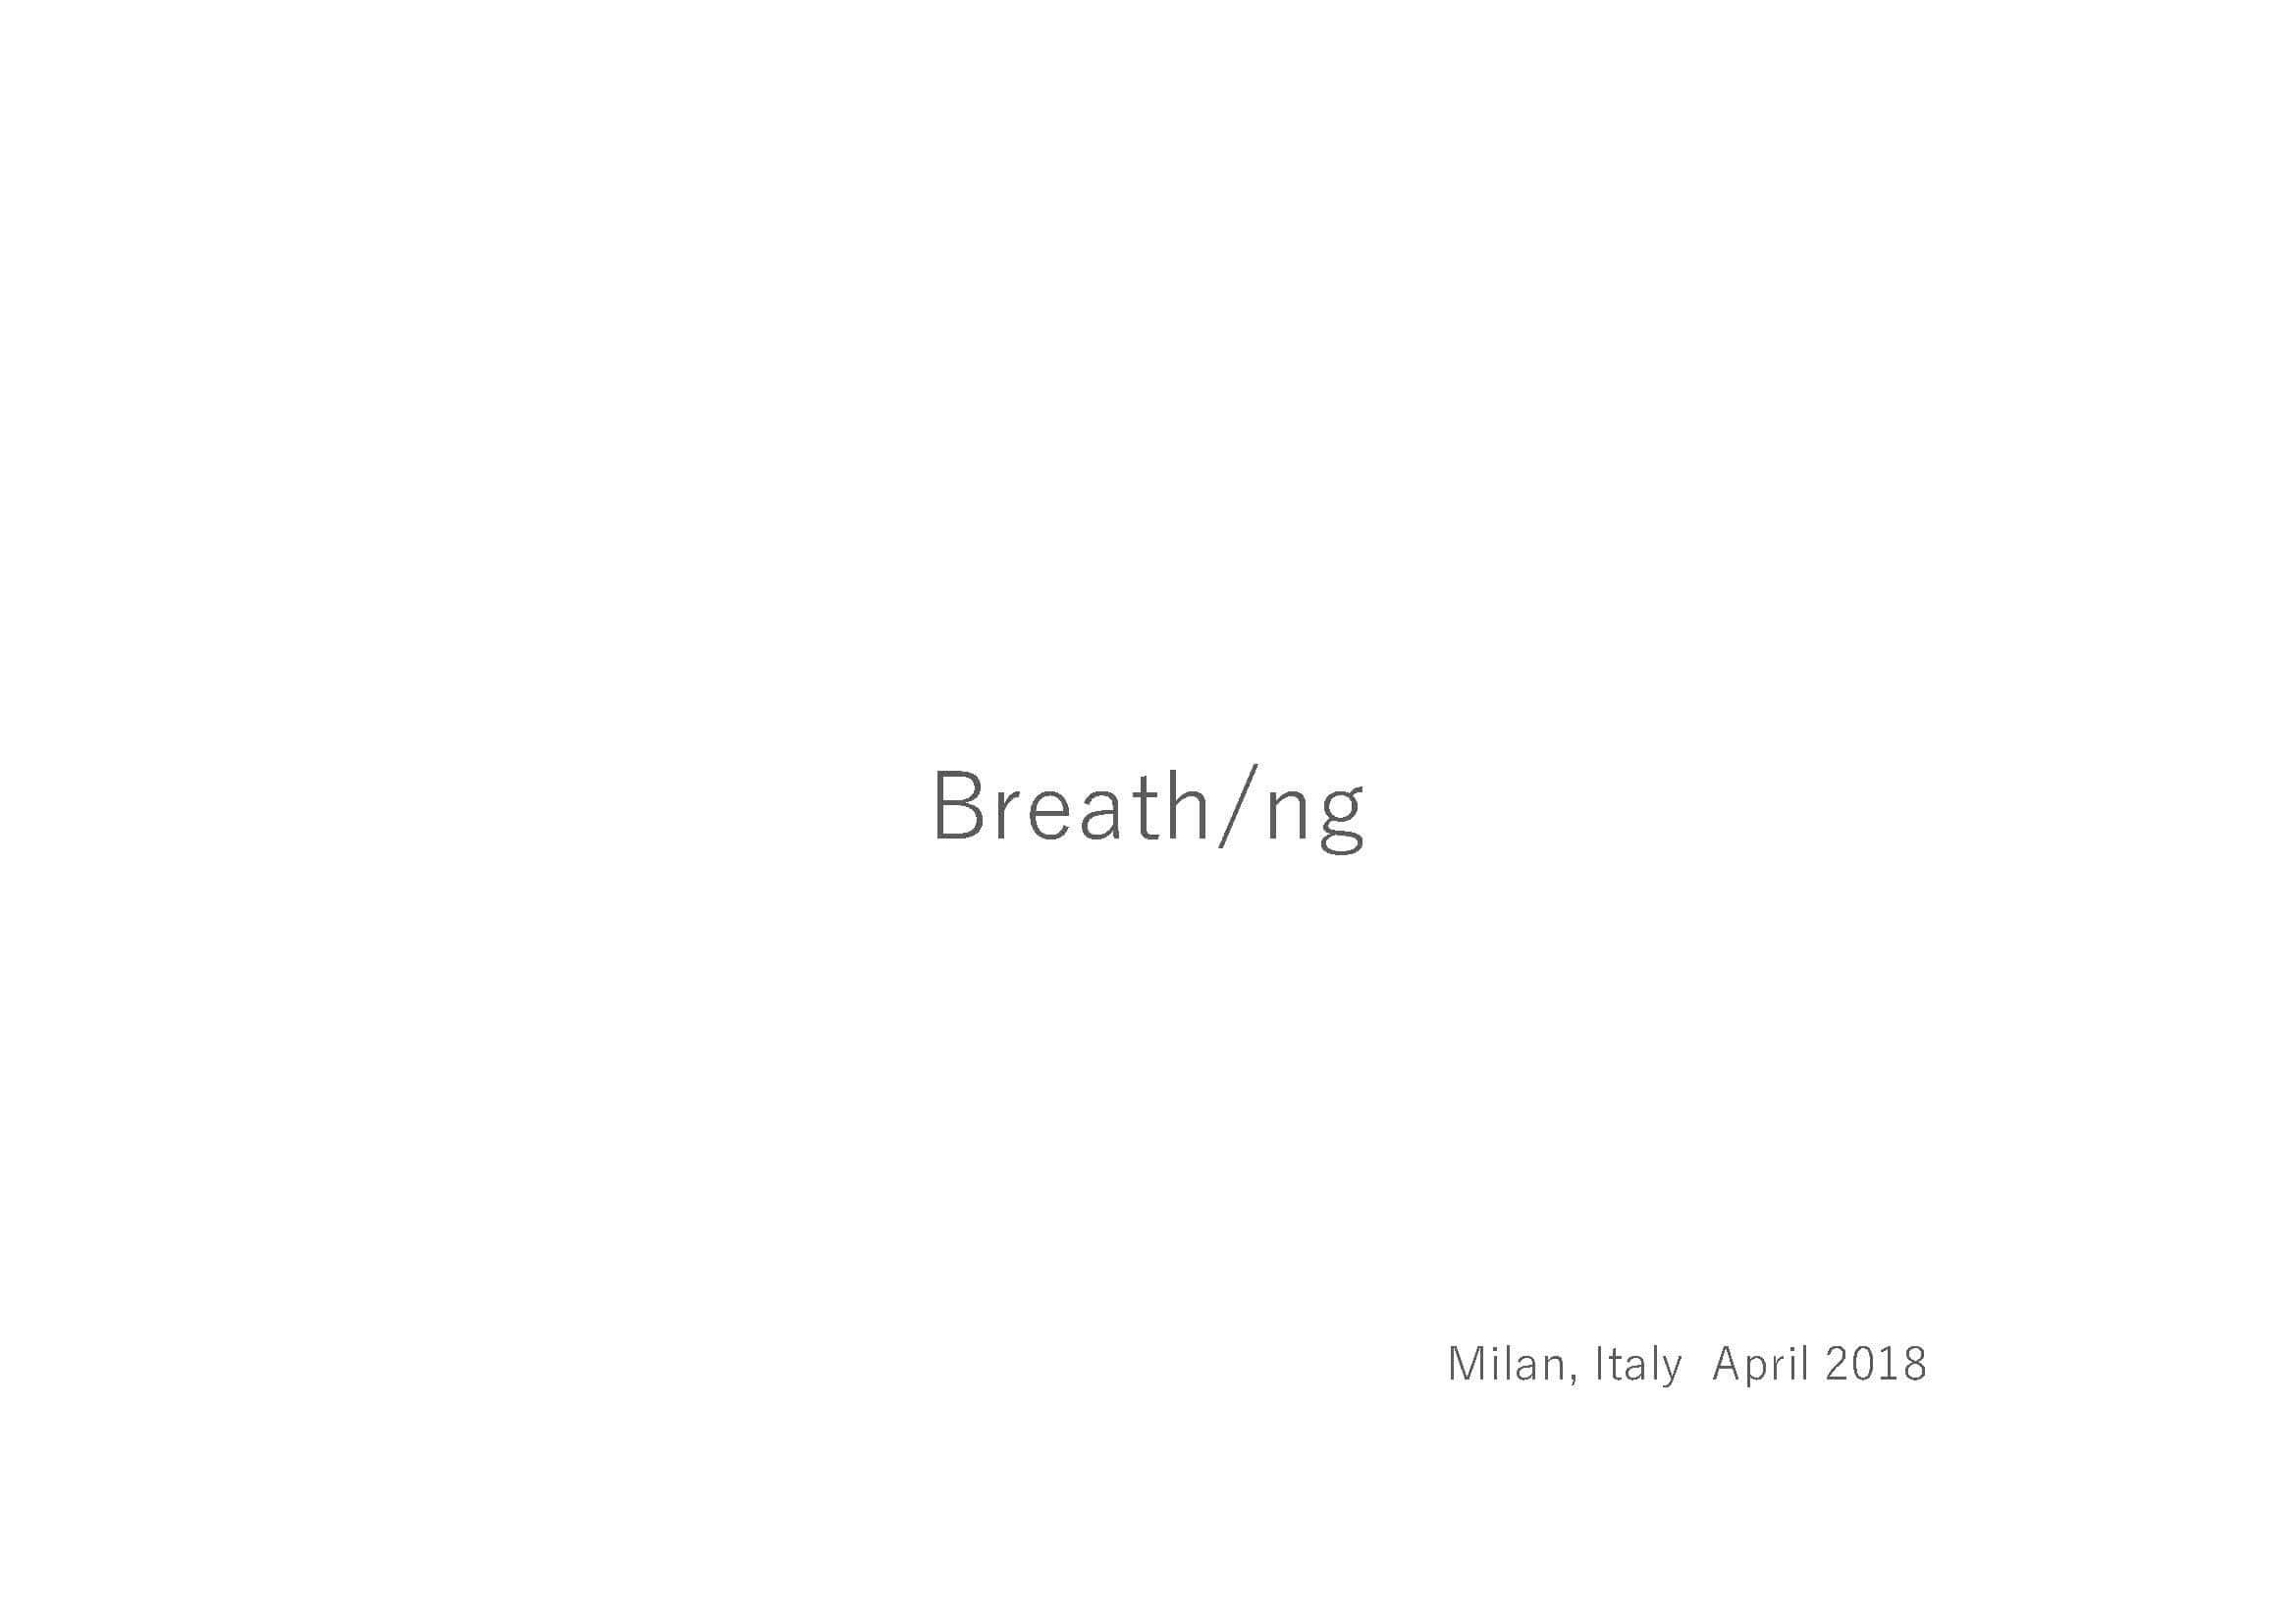 Breath ng01